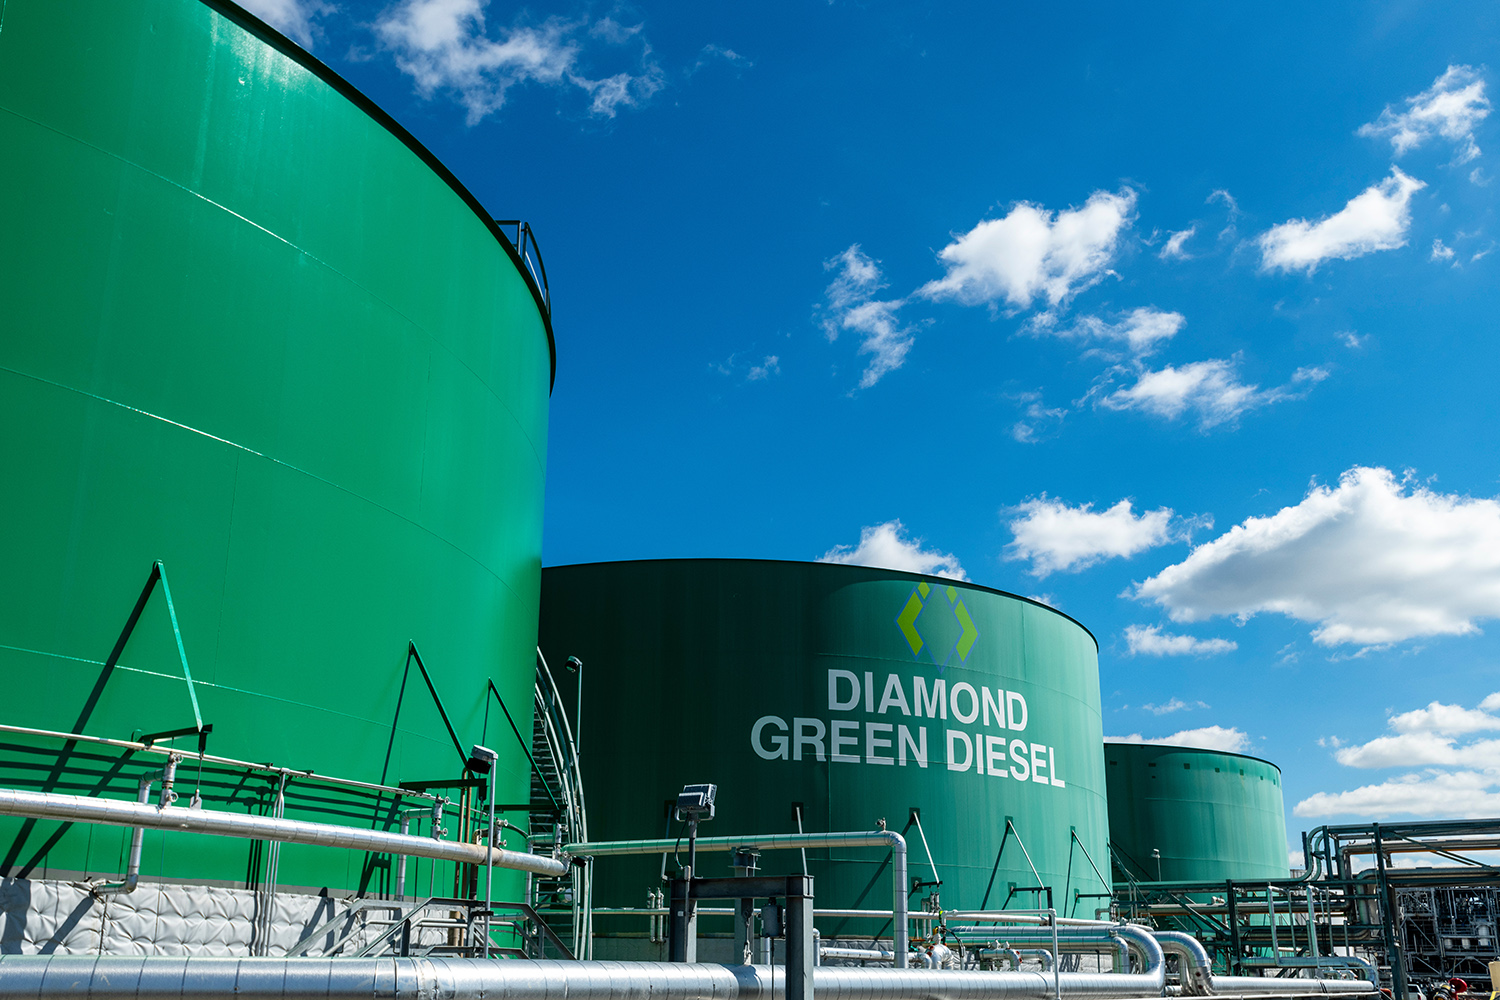 Diamond Green Diesel in St. Charles